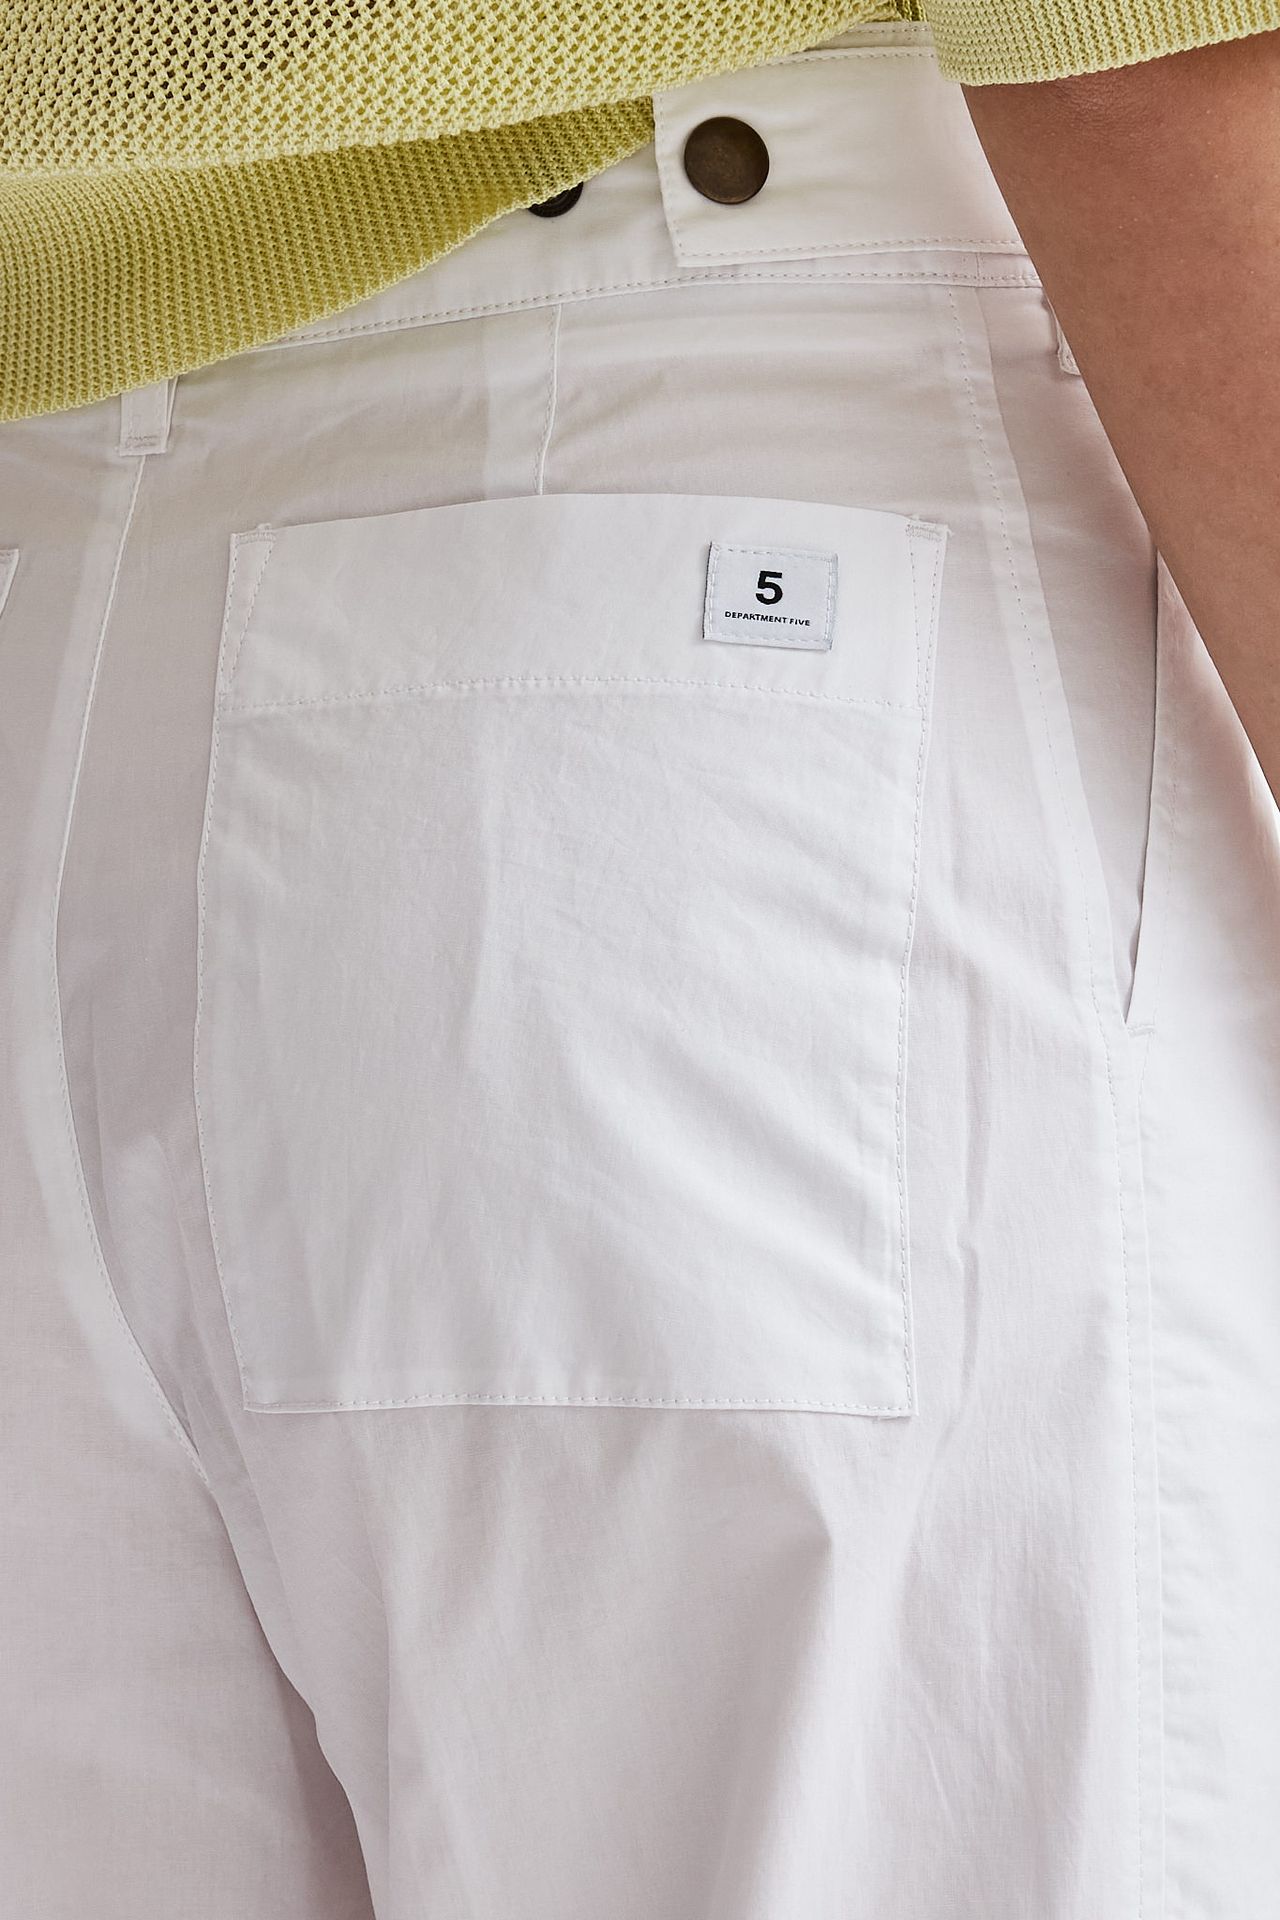 Pantalone PODSHARE in cotone bianco